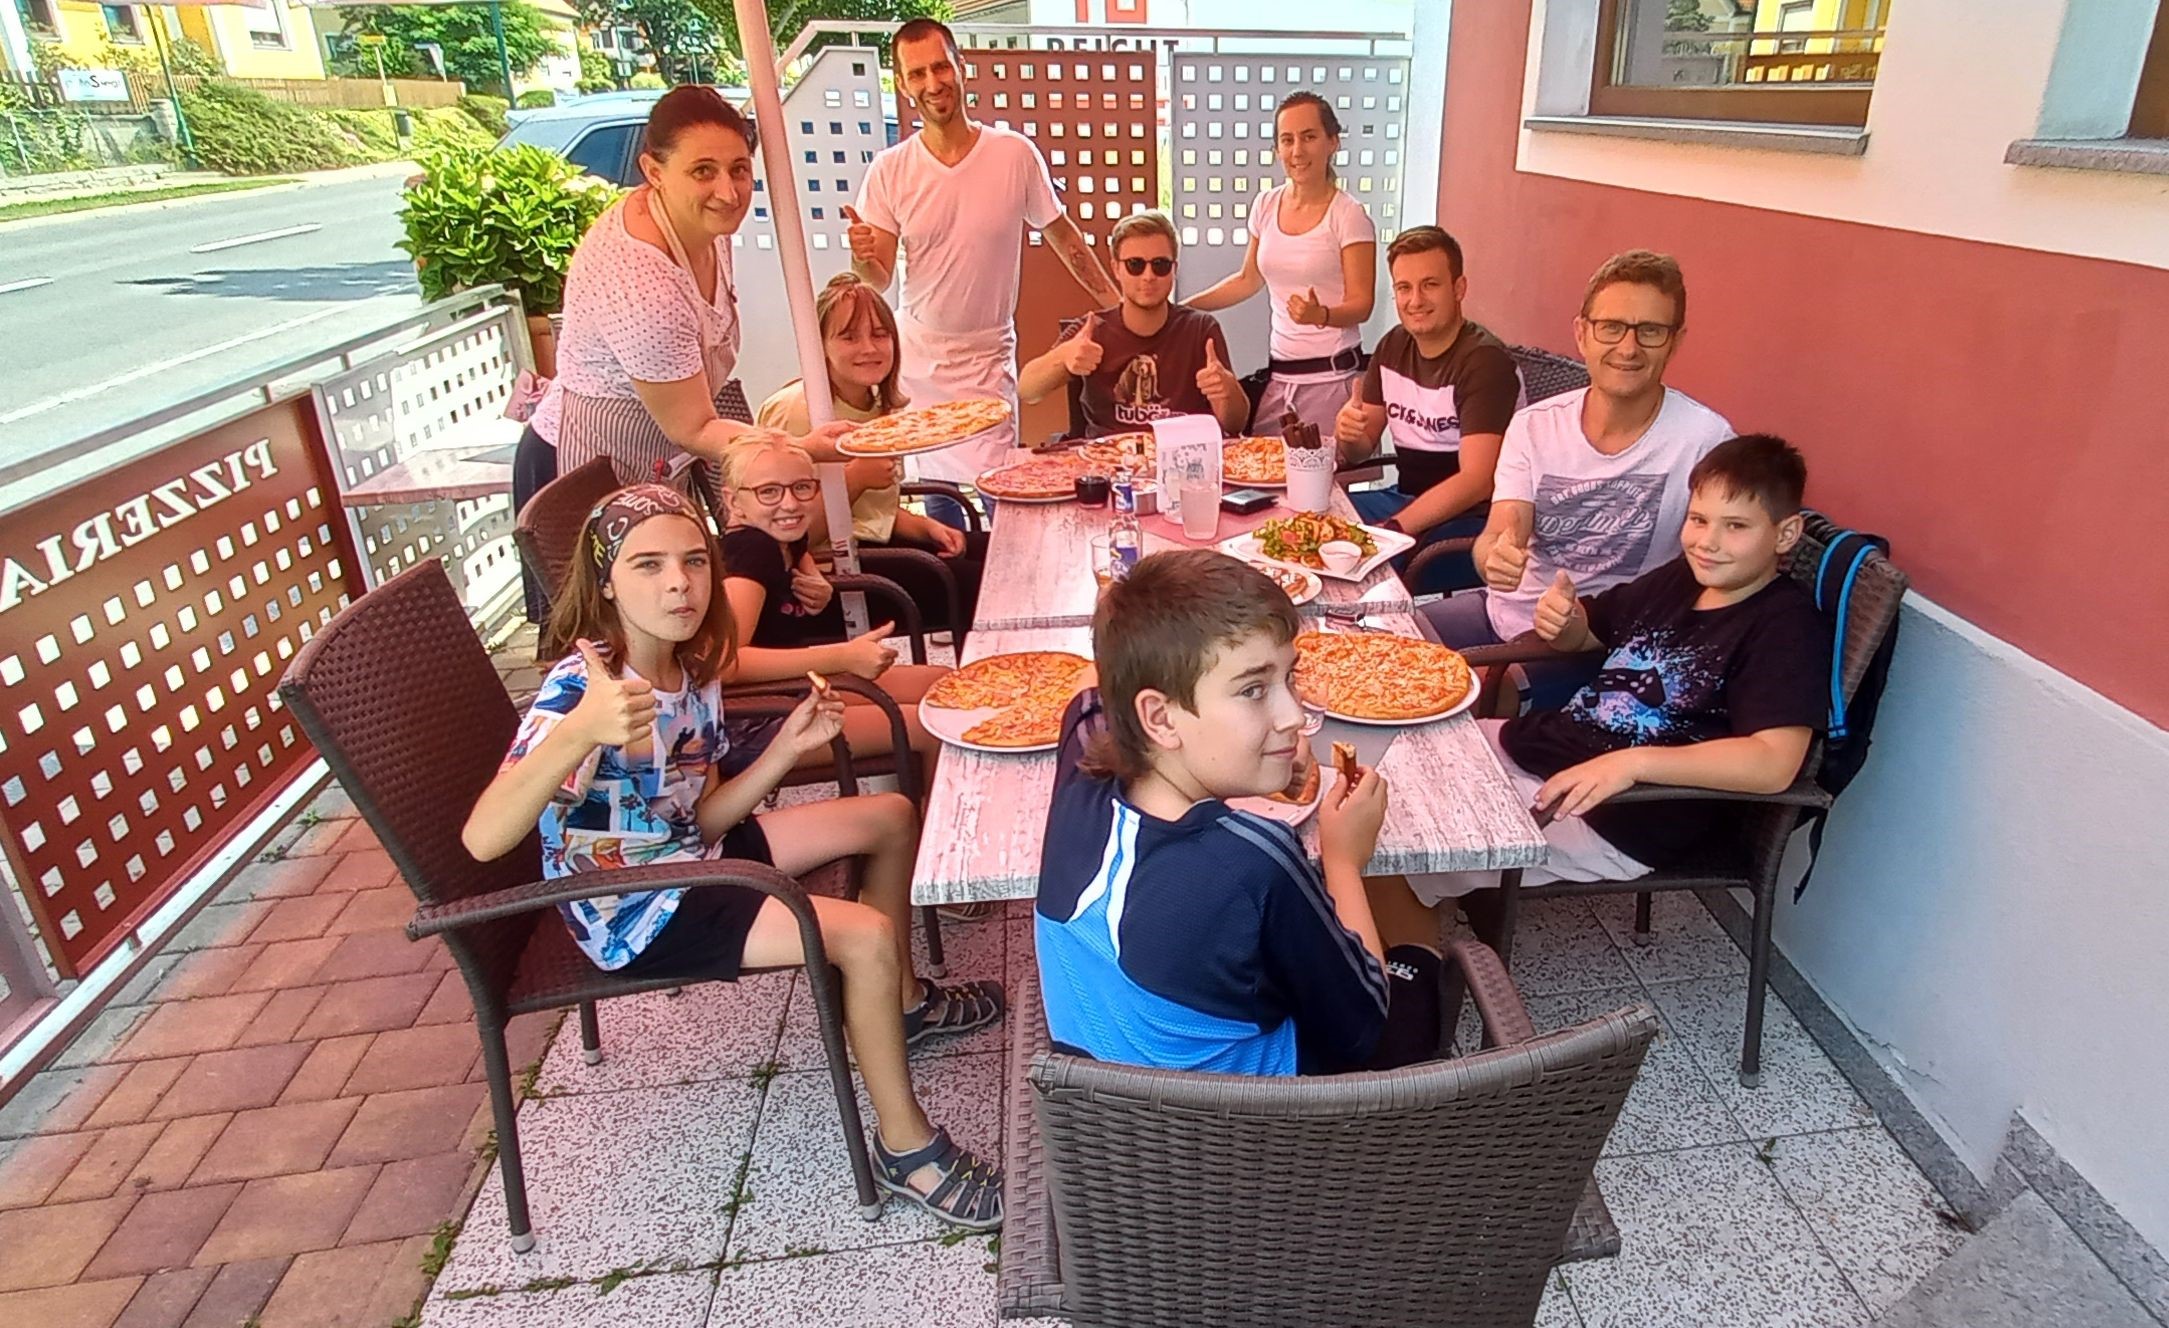 Pizzeria Palermo lädt JungmusikerInnen zum Pizzaessen ein